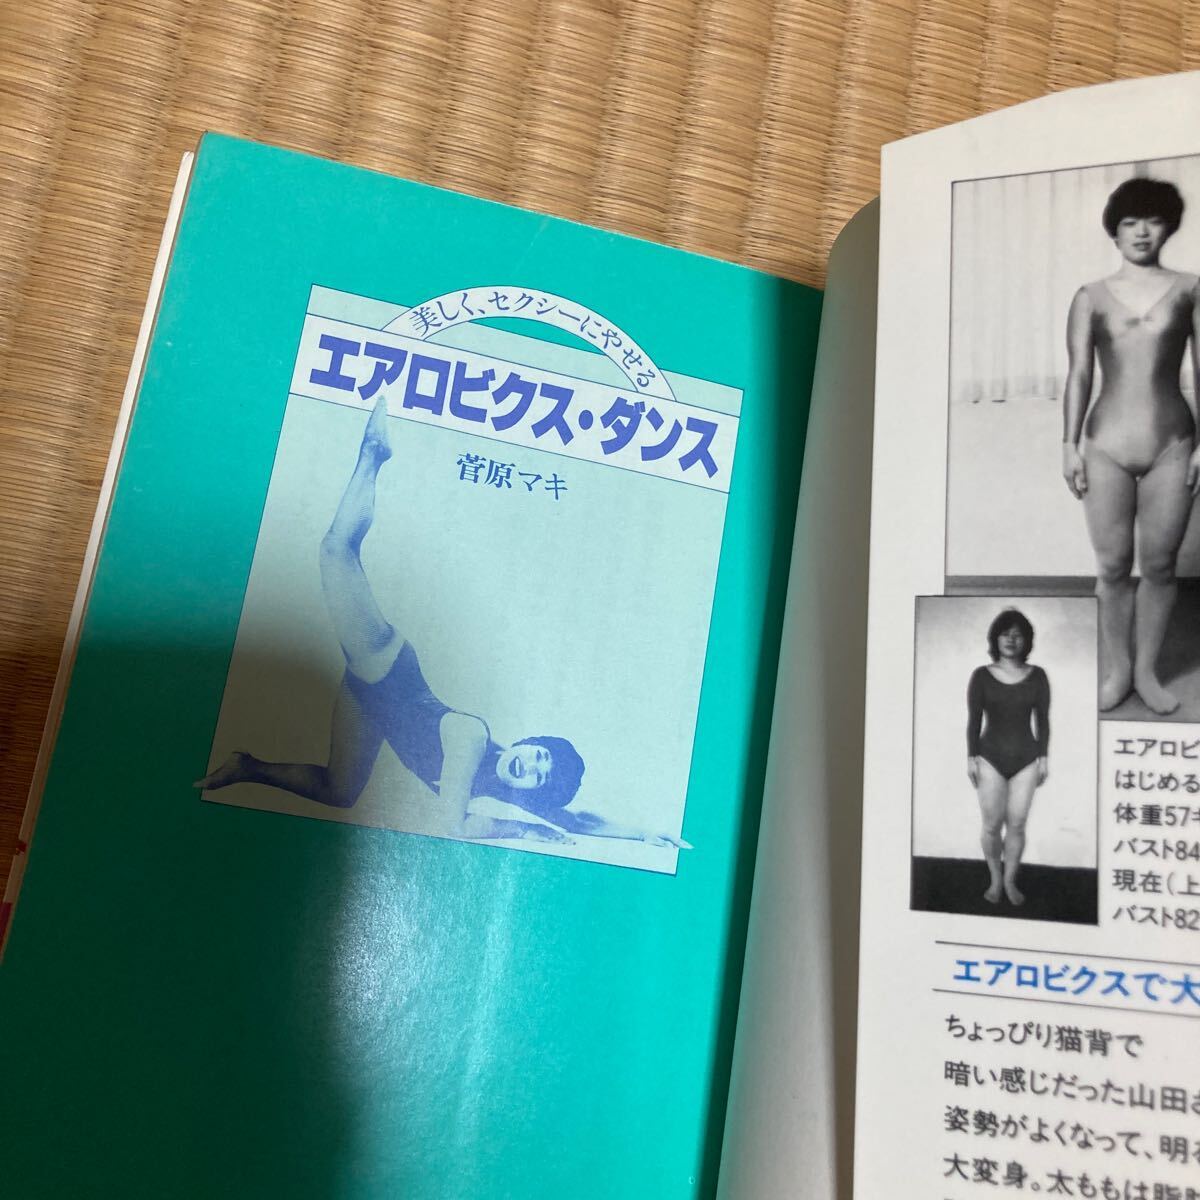 エアロビックス ダンス 菅原マキ セクシー シェイプアップ ハイレグ レオタード 体操 昭和58 1983の画像4